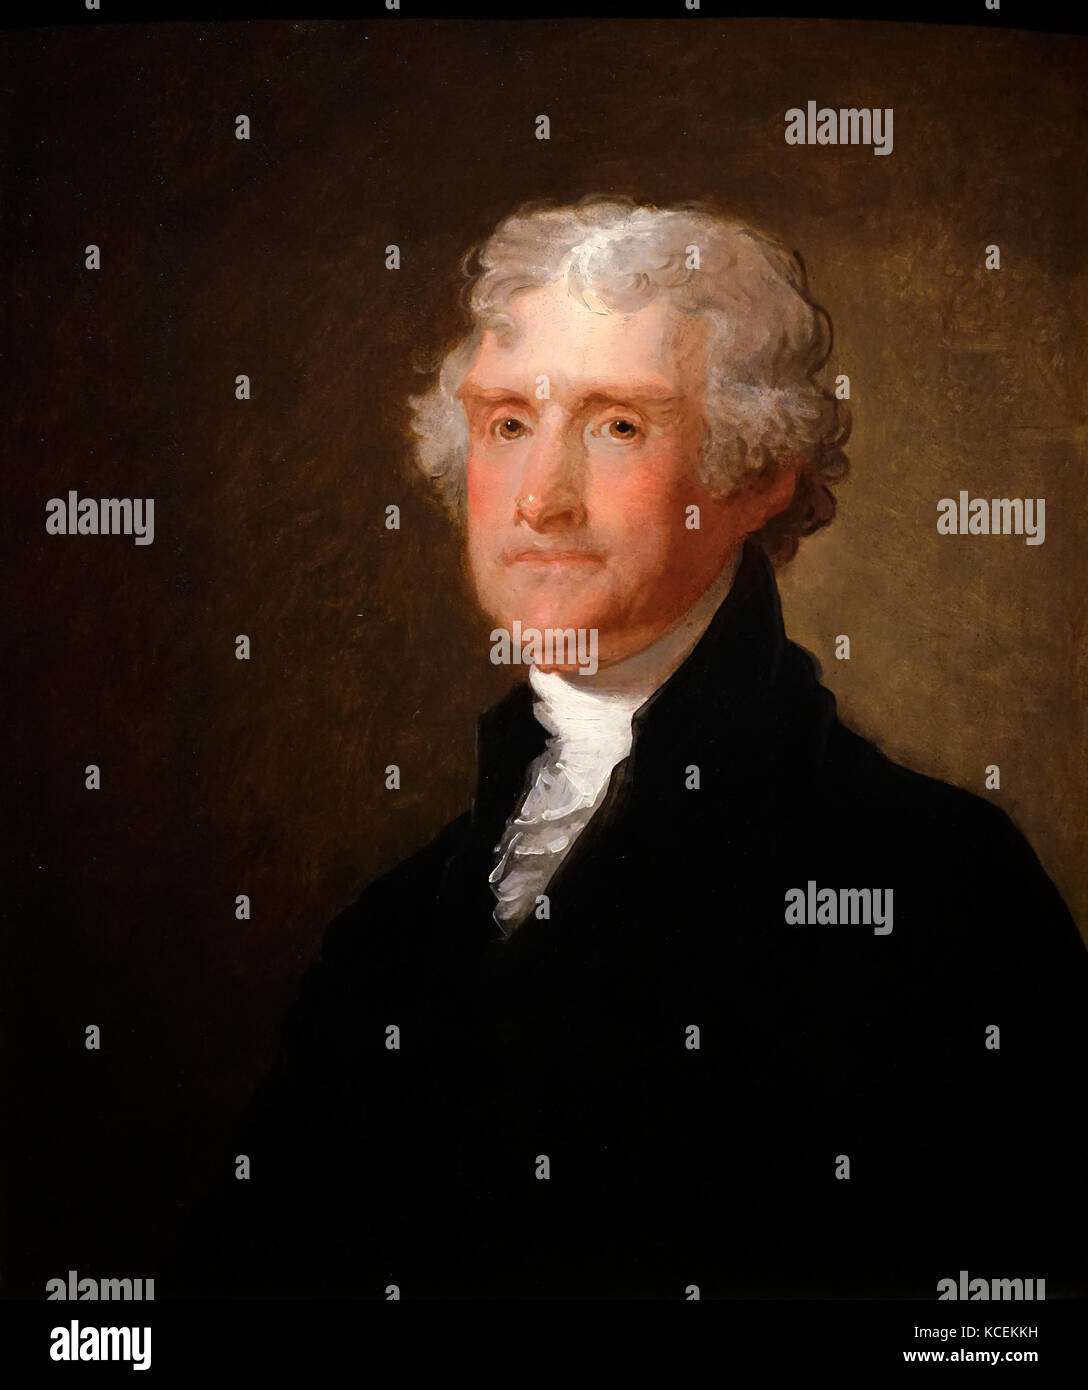 Portrait de Thomas Jefferson (1743-1826) un père fondateur, président des Etats-Unis et auteur de la Déclaration d'indépendance. Peint par Gilbert Stuart (1755-1828), un peintre américain. En date du 19e siècle Banque D'Images